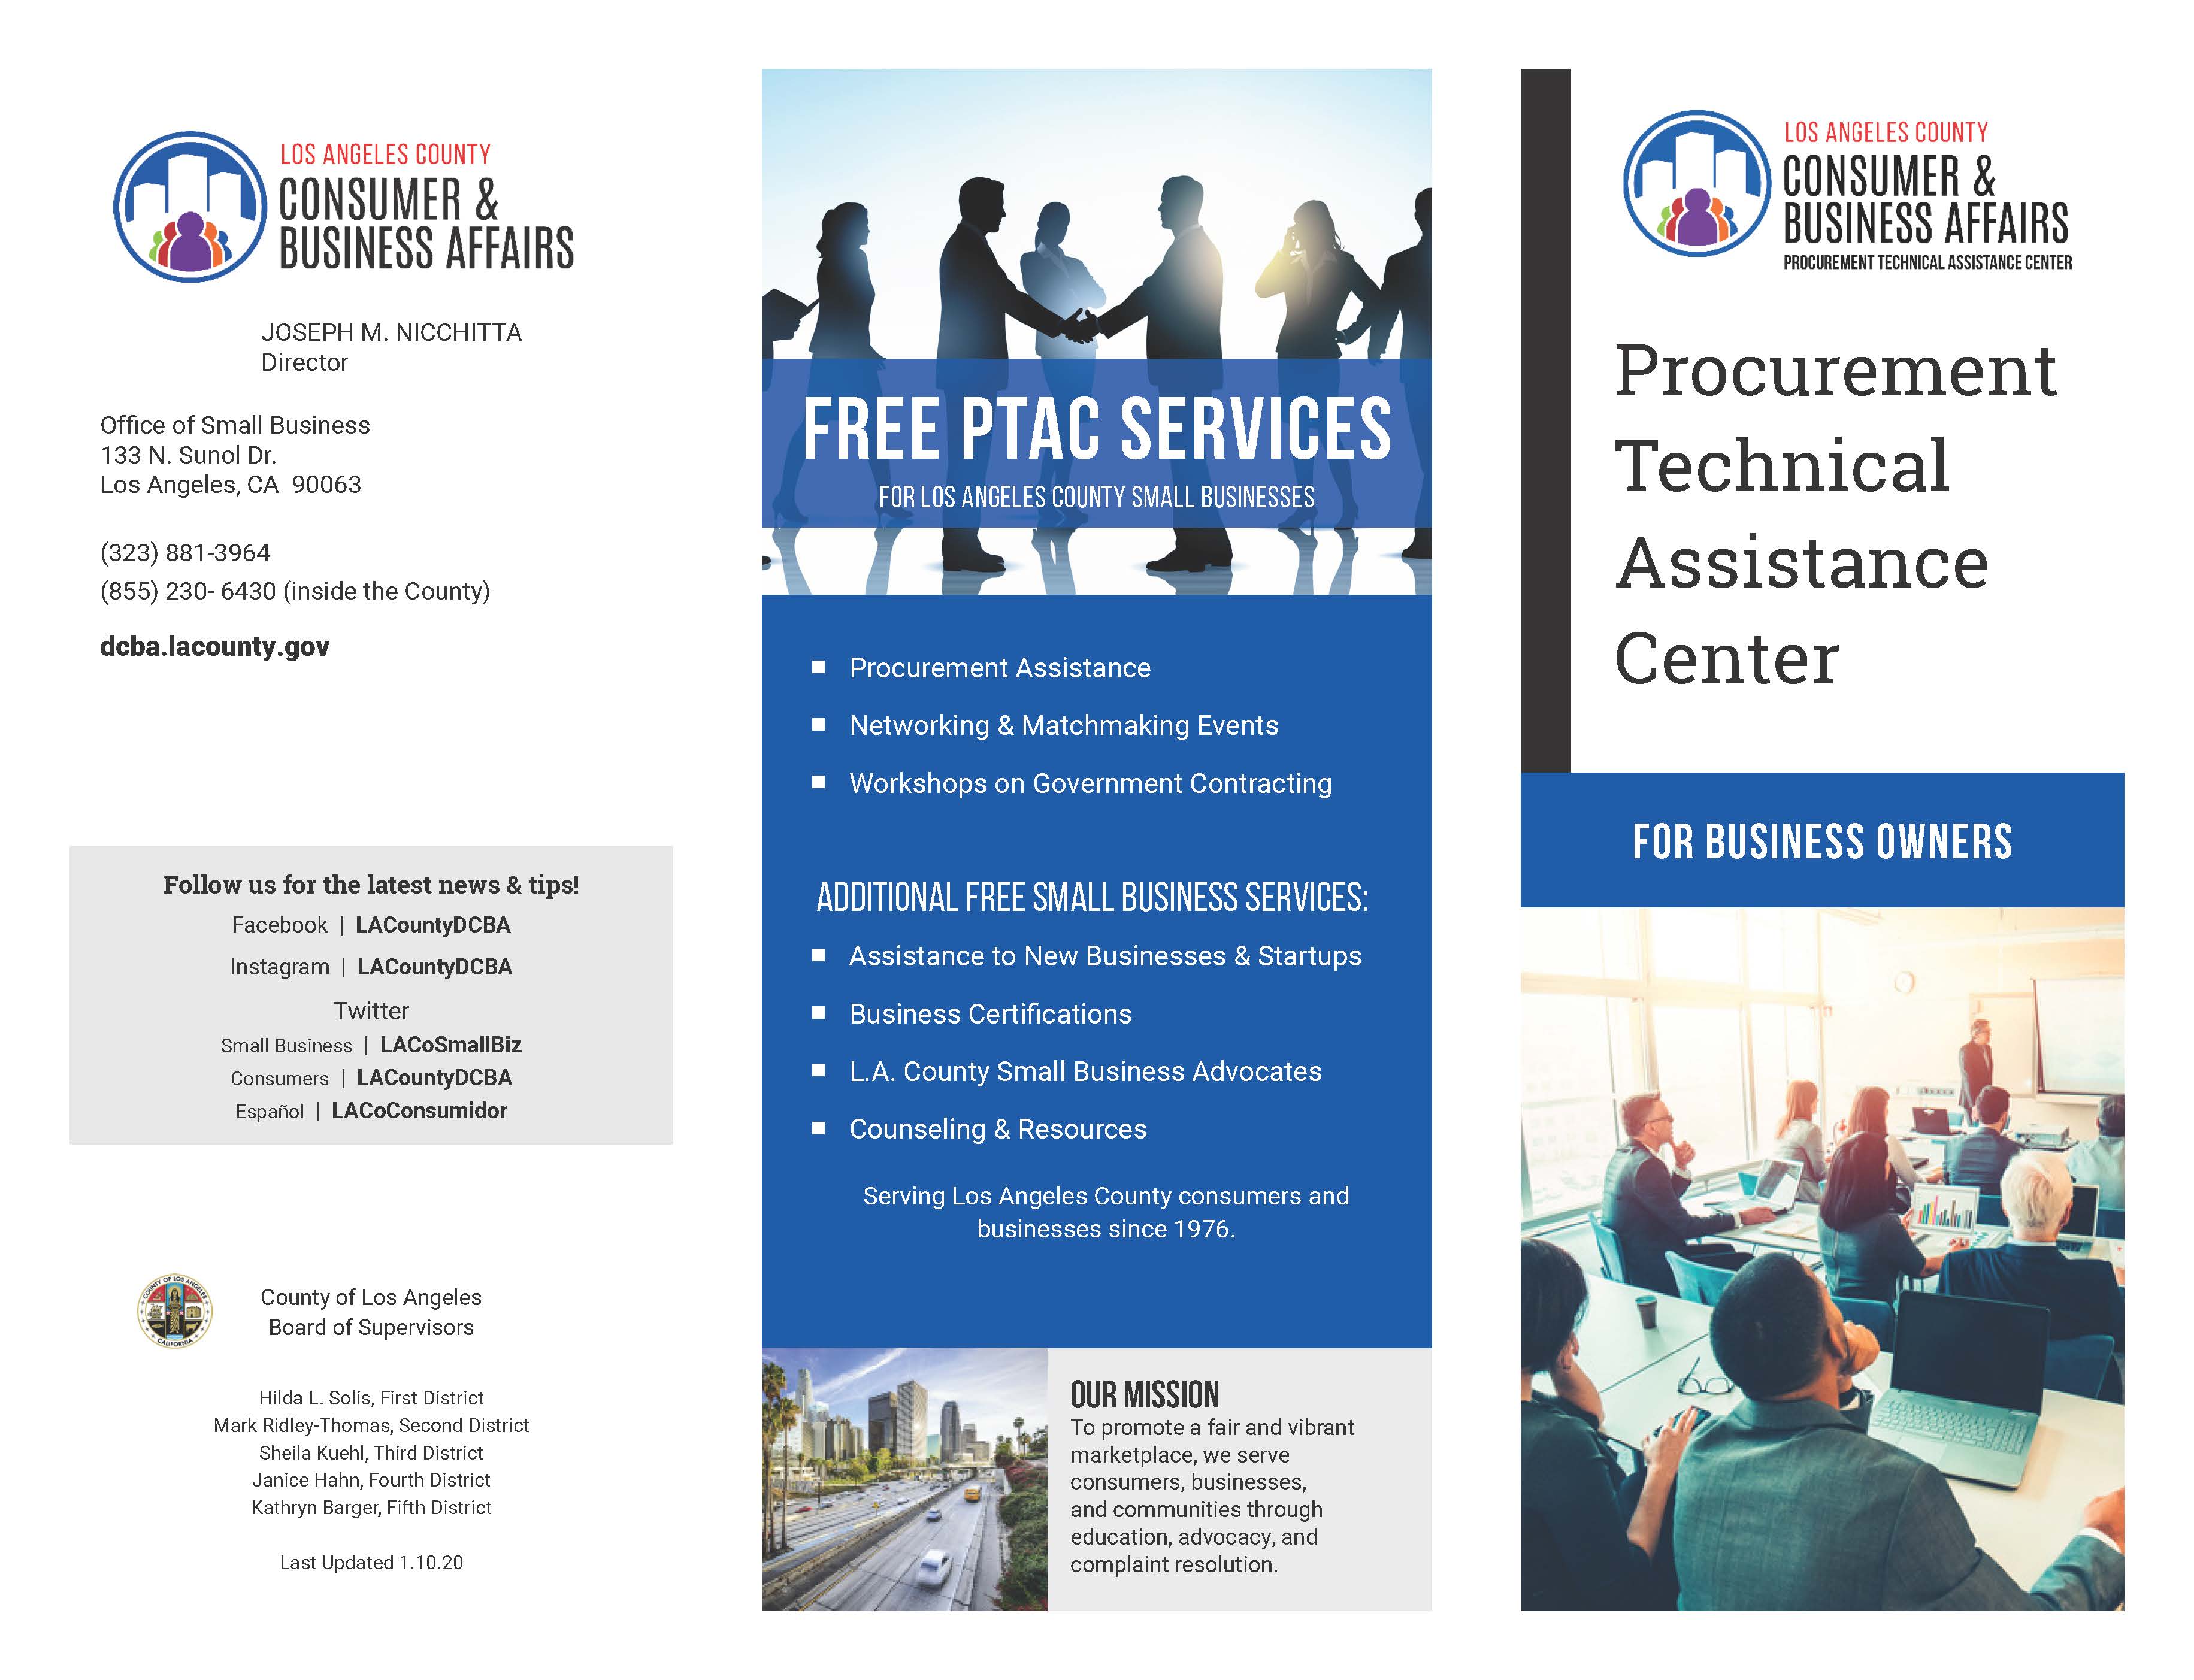 Procurement Technical Assistance Center Brochure